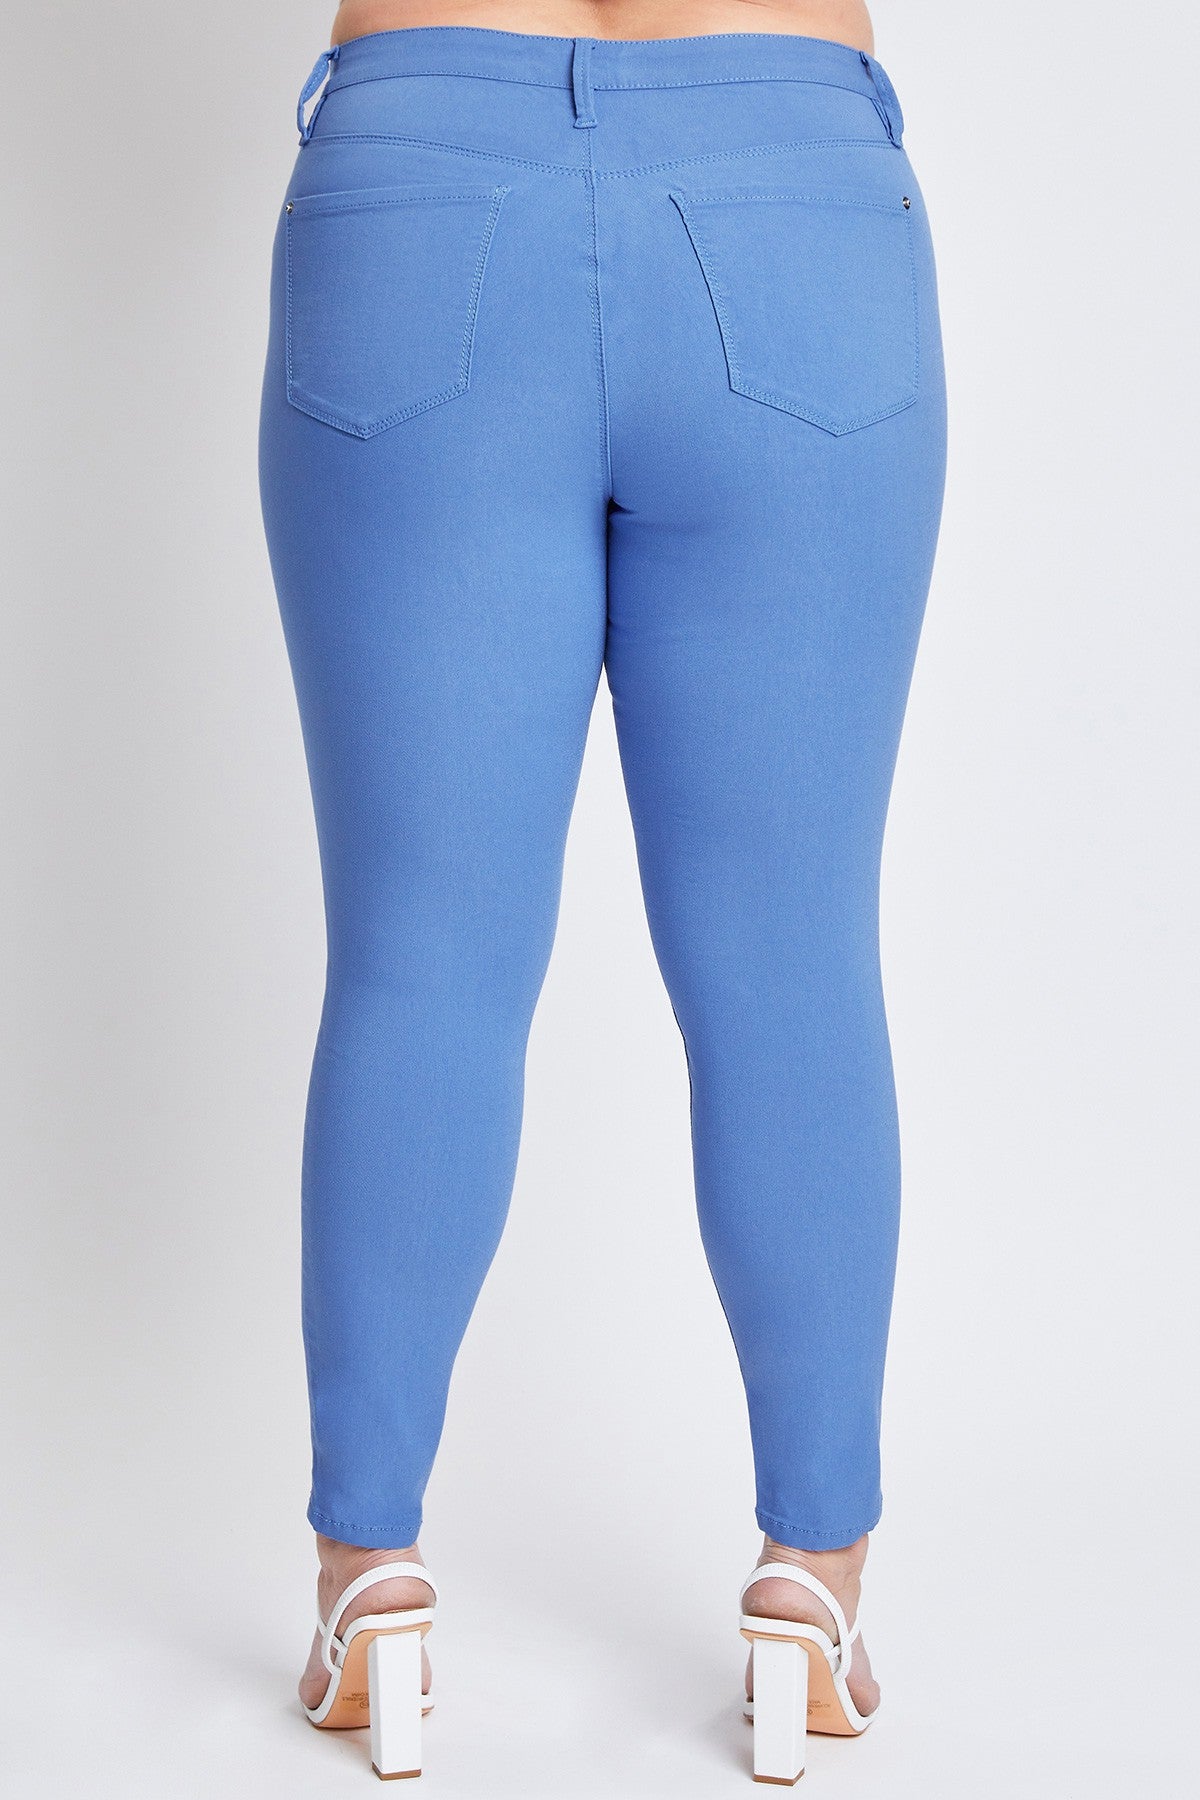 Curvy Blue Bay YMI Hyperstretch Jeans